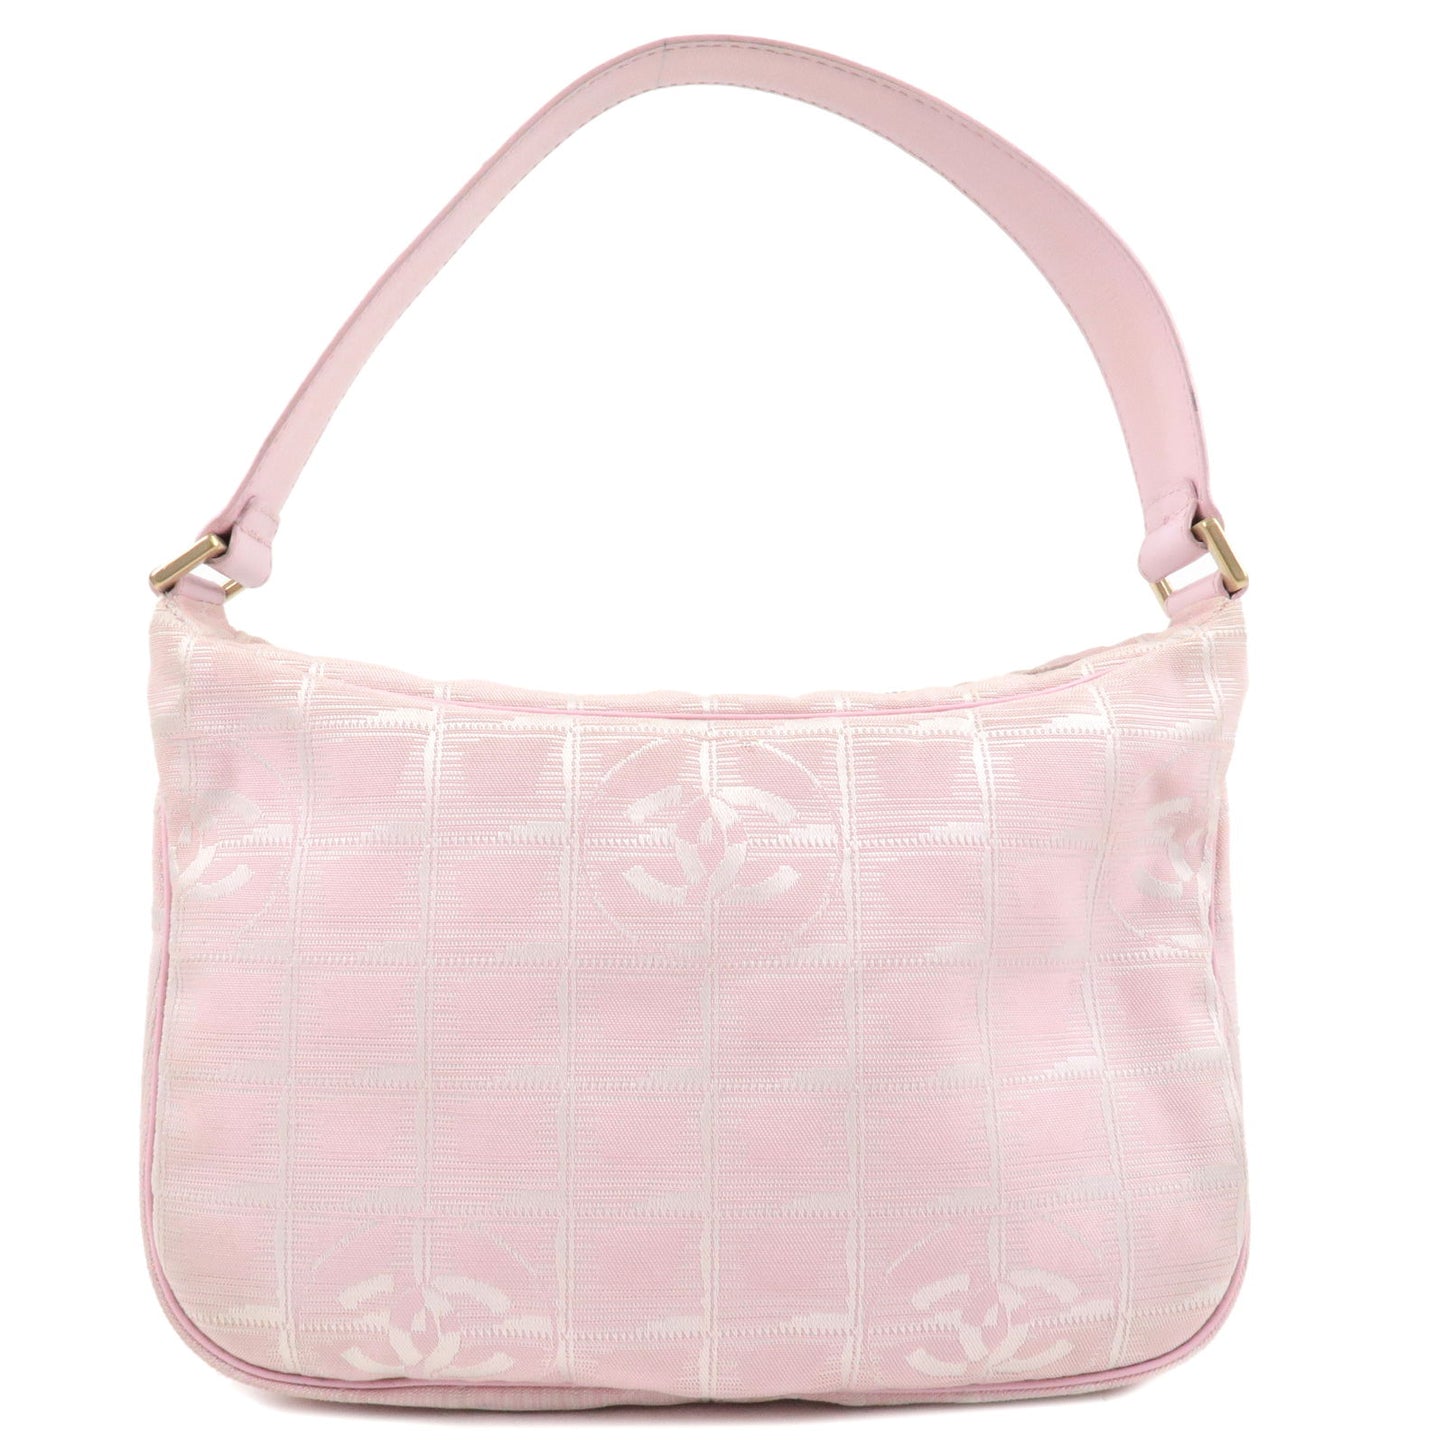 CHANEL-Travel-Line-Nylon-Jacquard-Leather-Shoulder-Bag-Pink-A20516